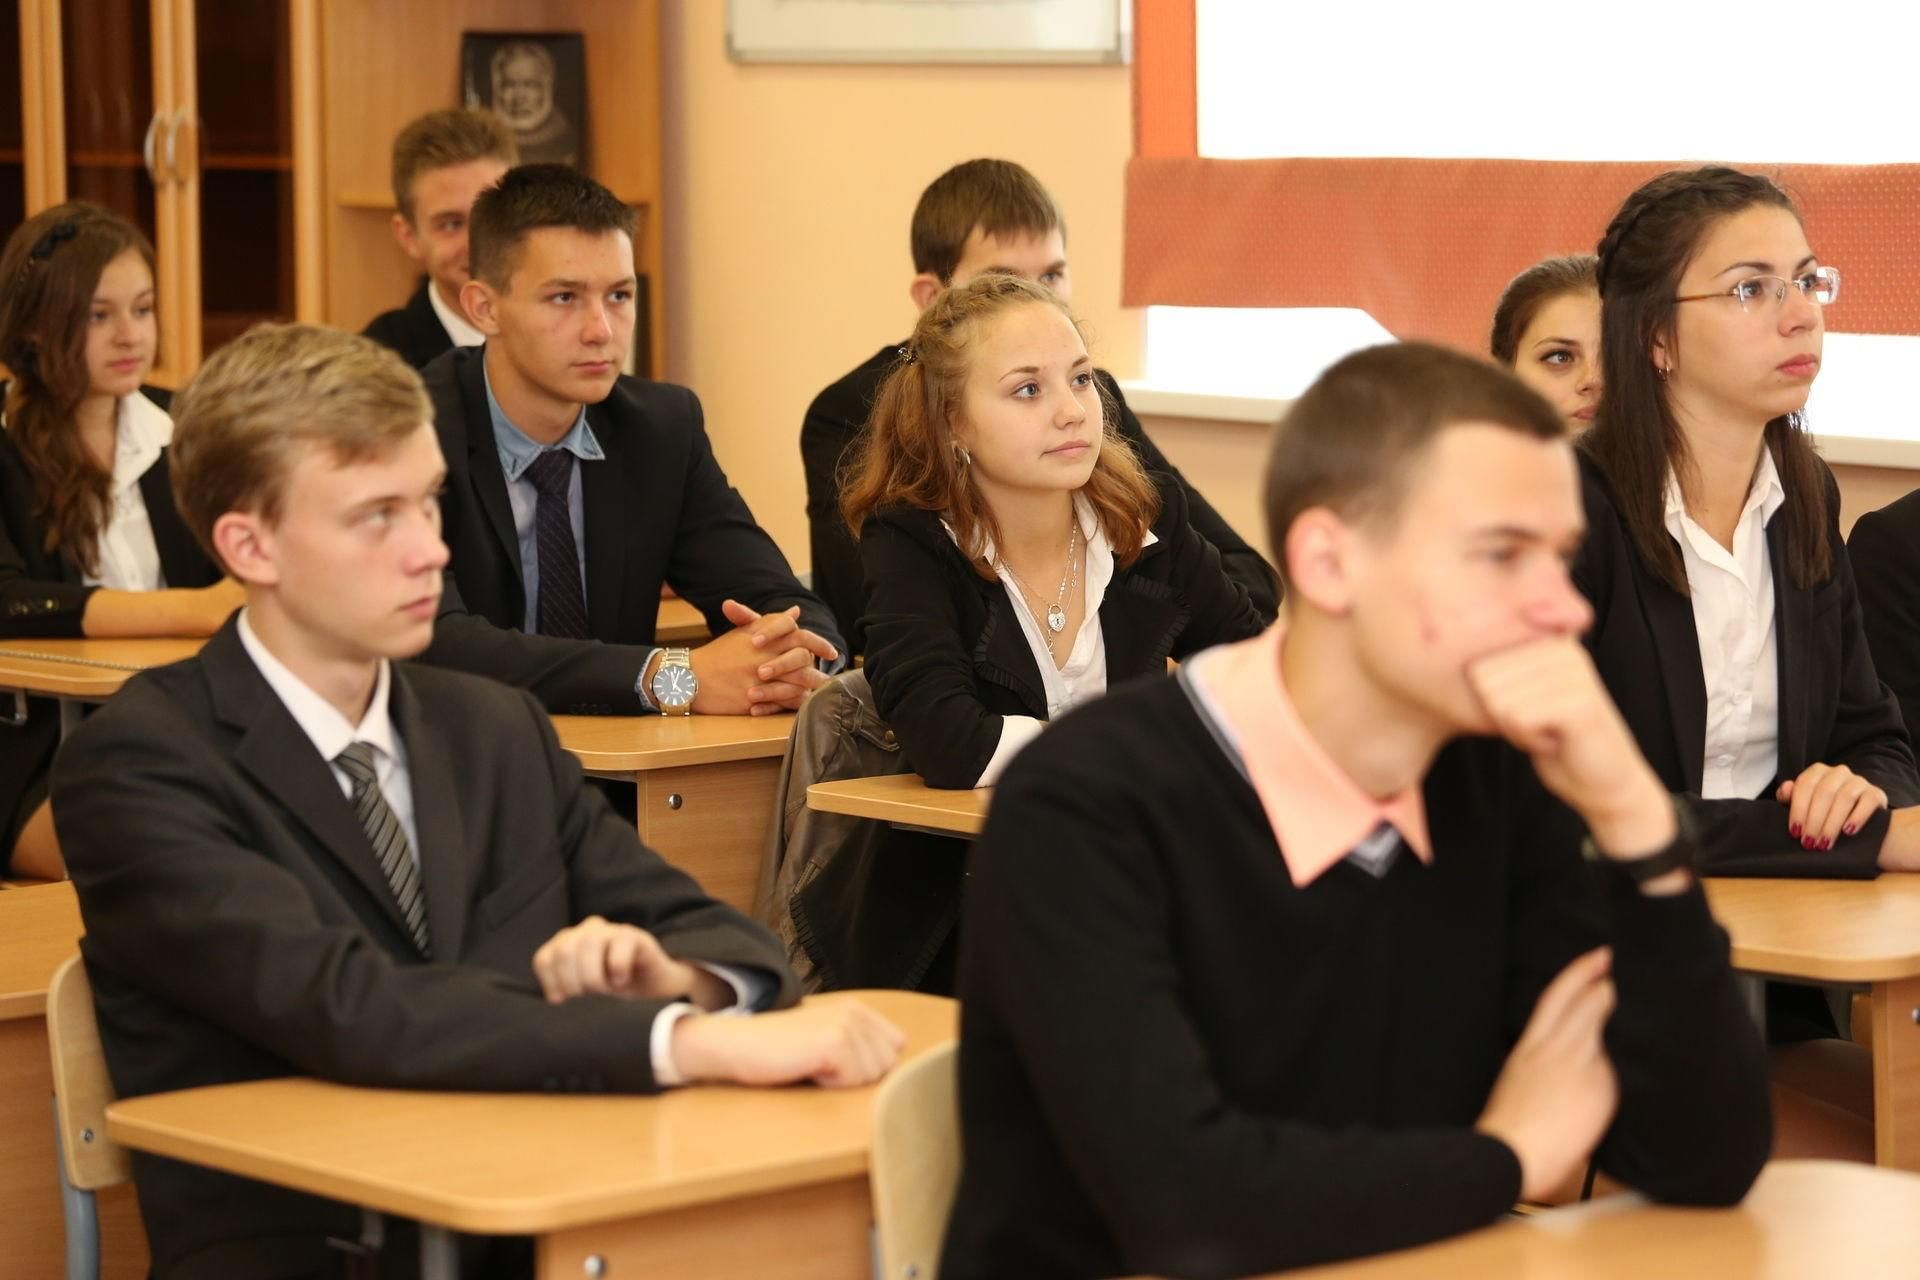 Российская школа качества